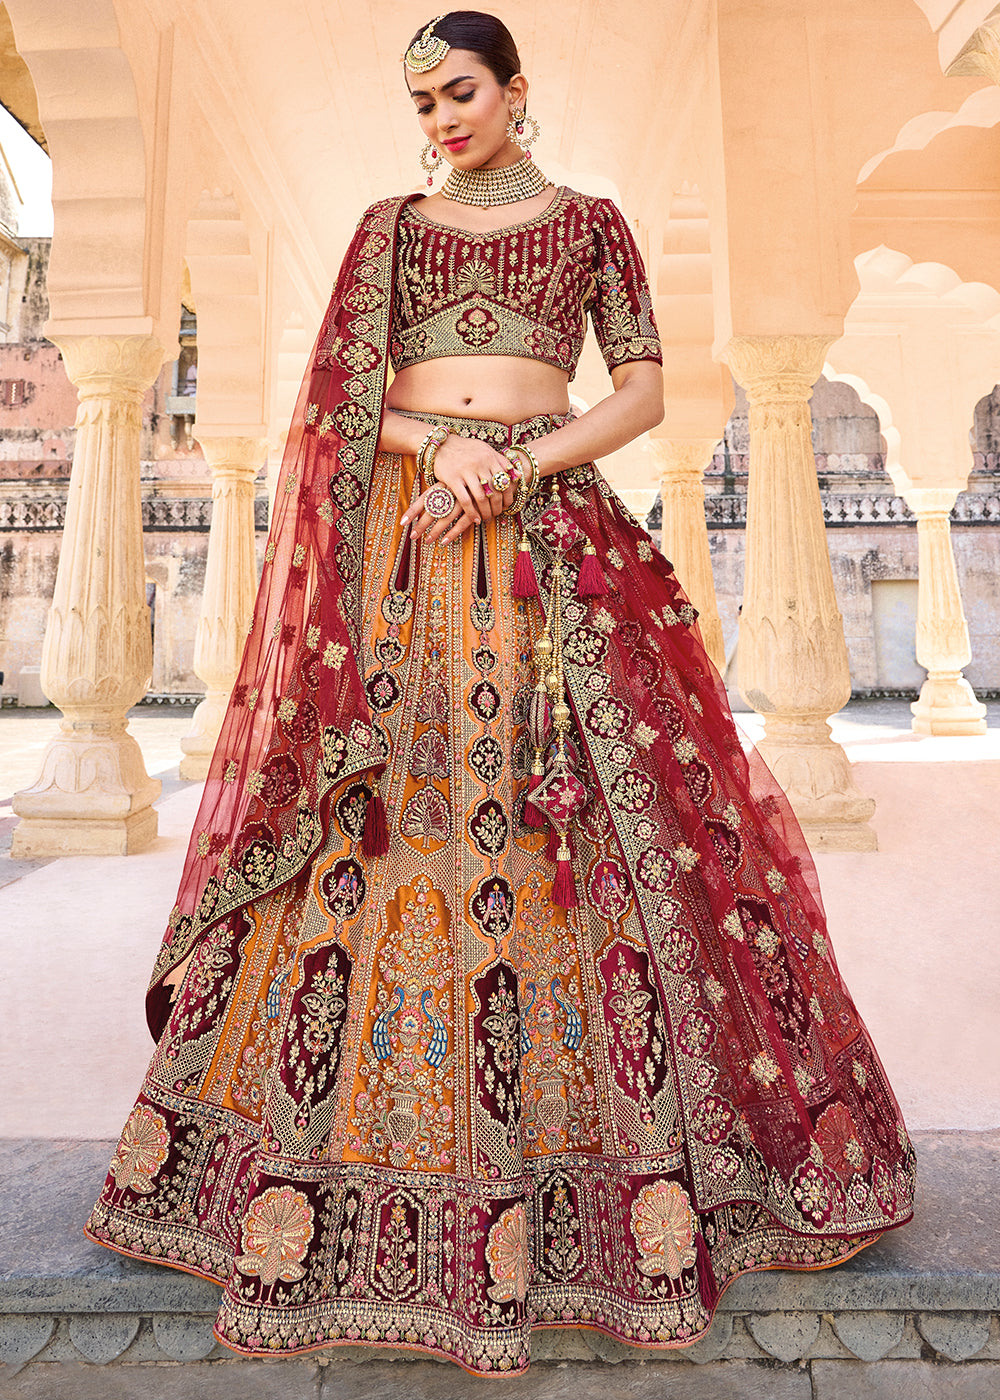 Party Wear Indian Lengha New Wedding Bollywood Pakistani Designer Lehenga  Choli | eBay